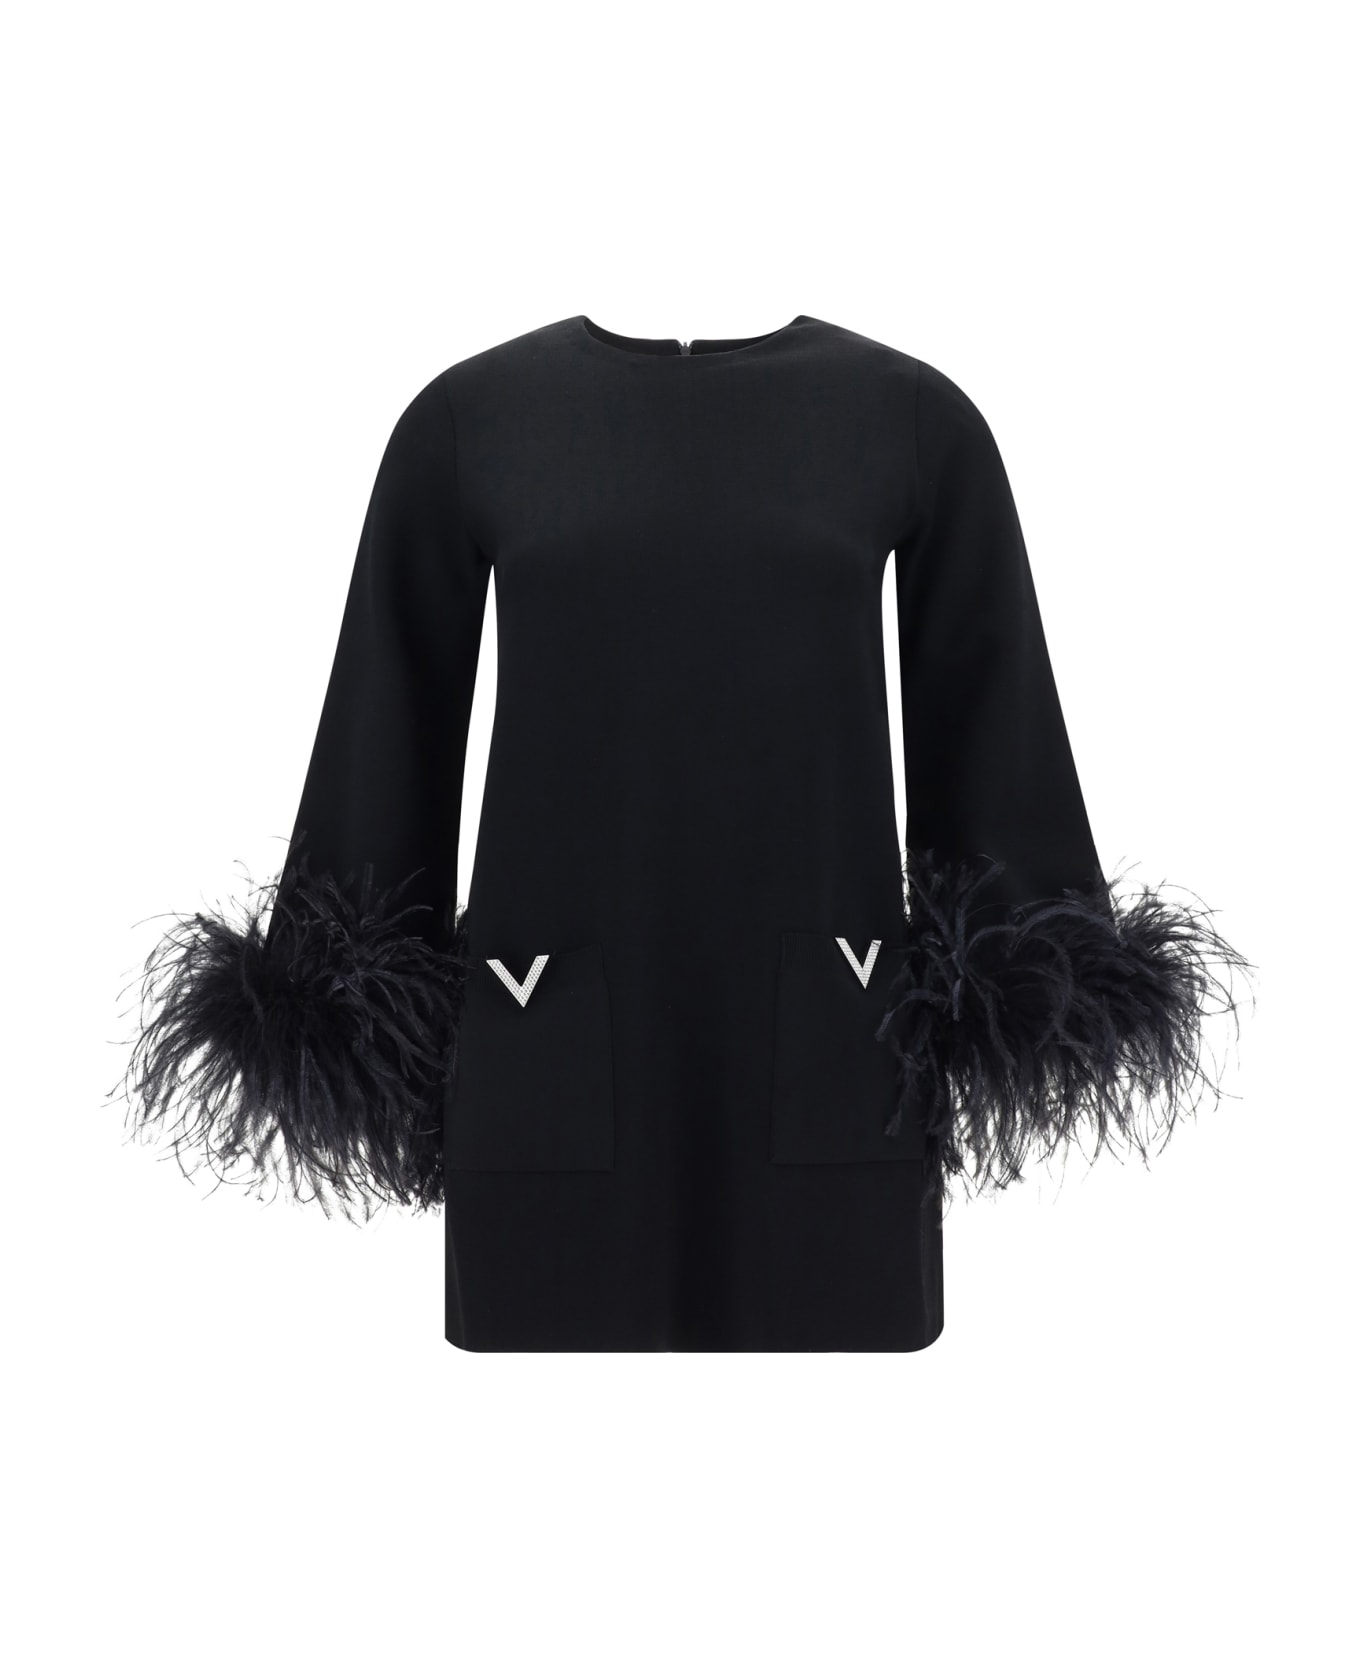 Valentino Black Viscose Feather Sweater - Nero